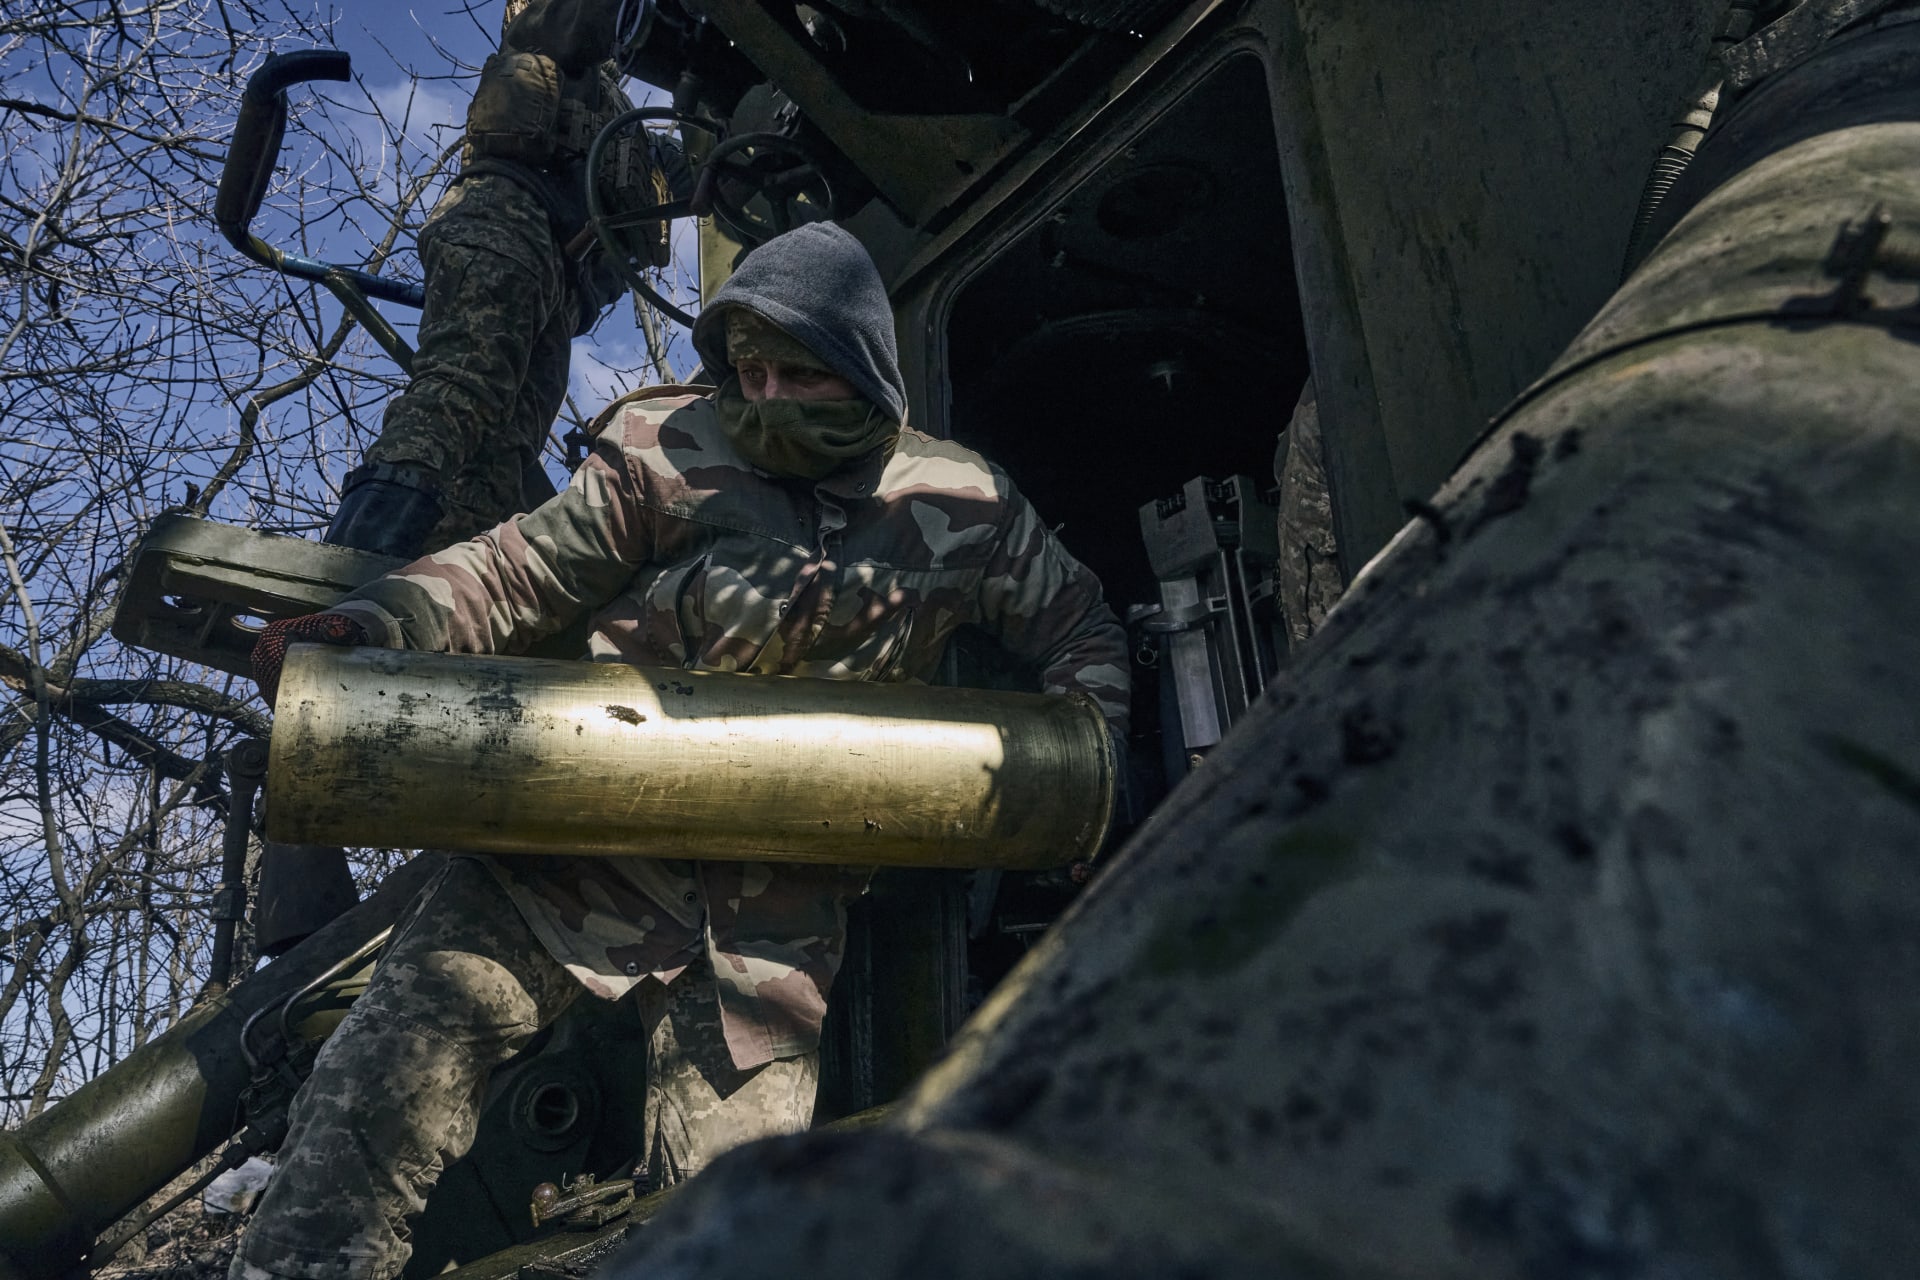 Ukrajinský voják nabíjí samohybnou houfnici nedaleko frontové linie u Bachmutu.